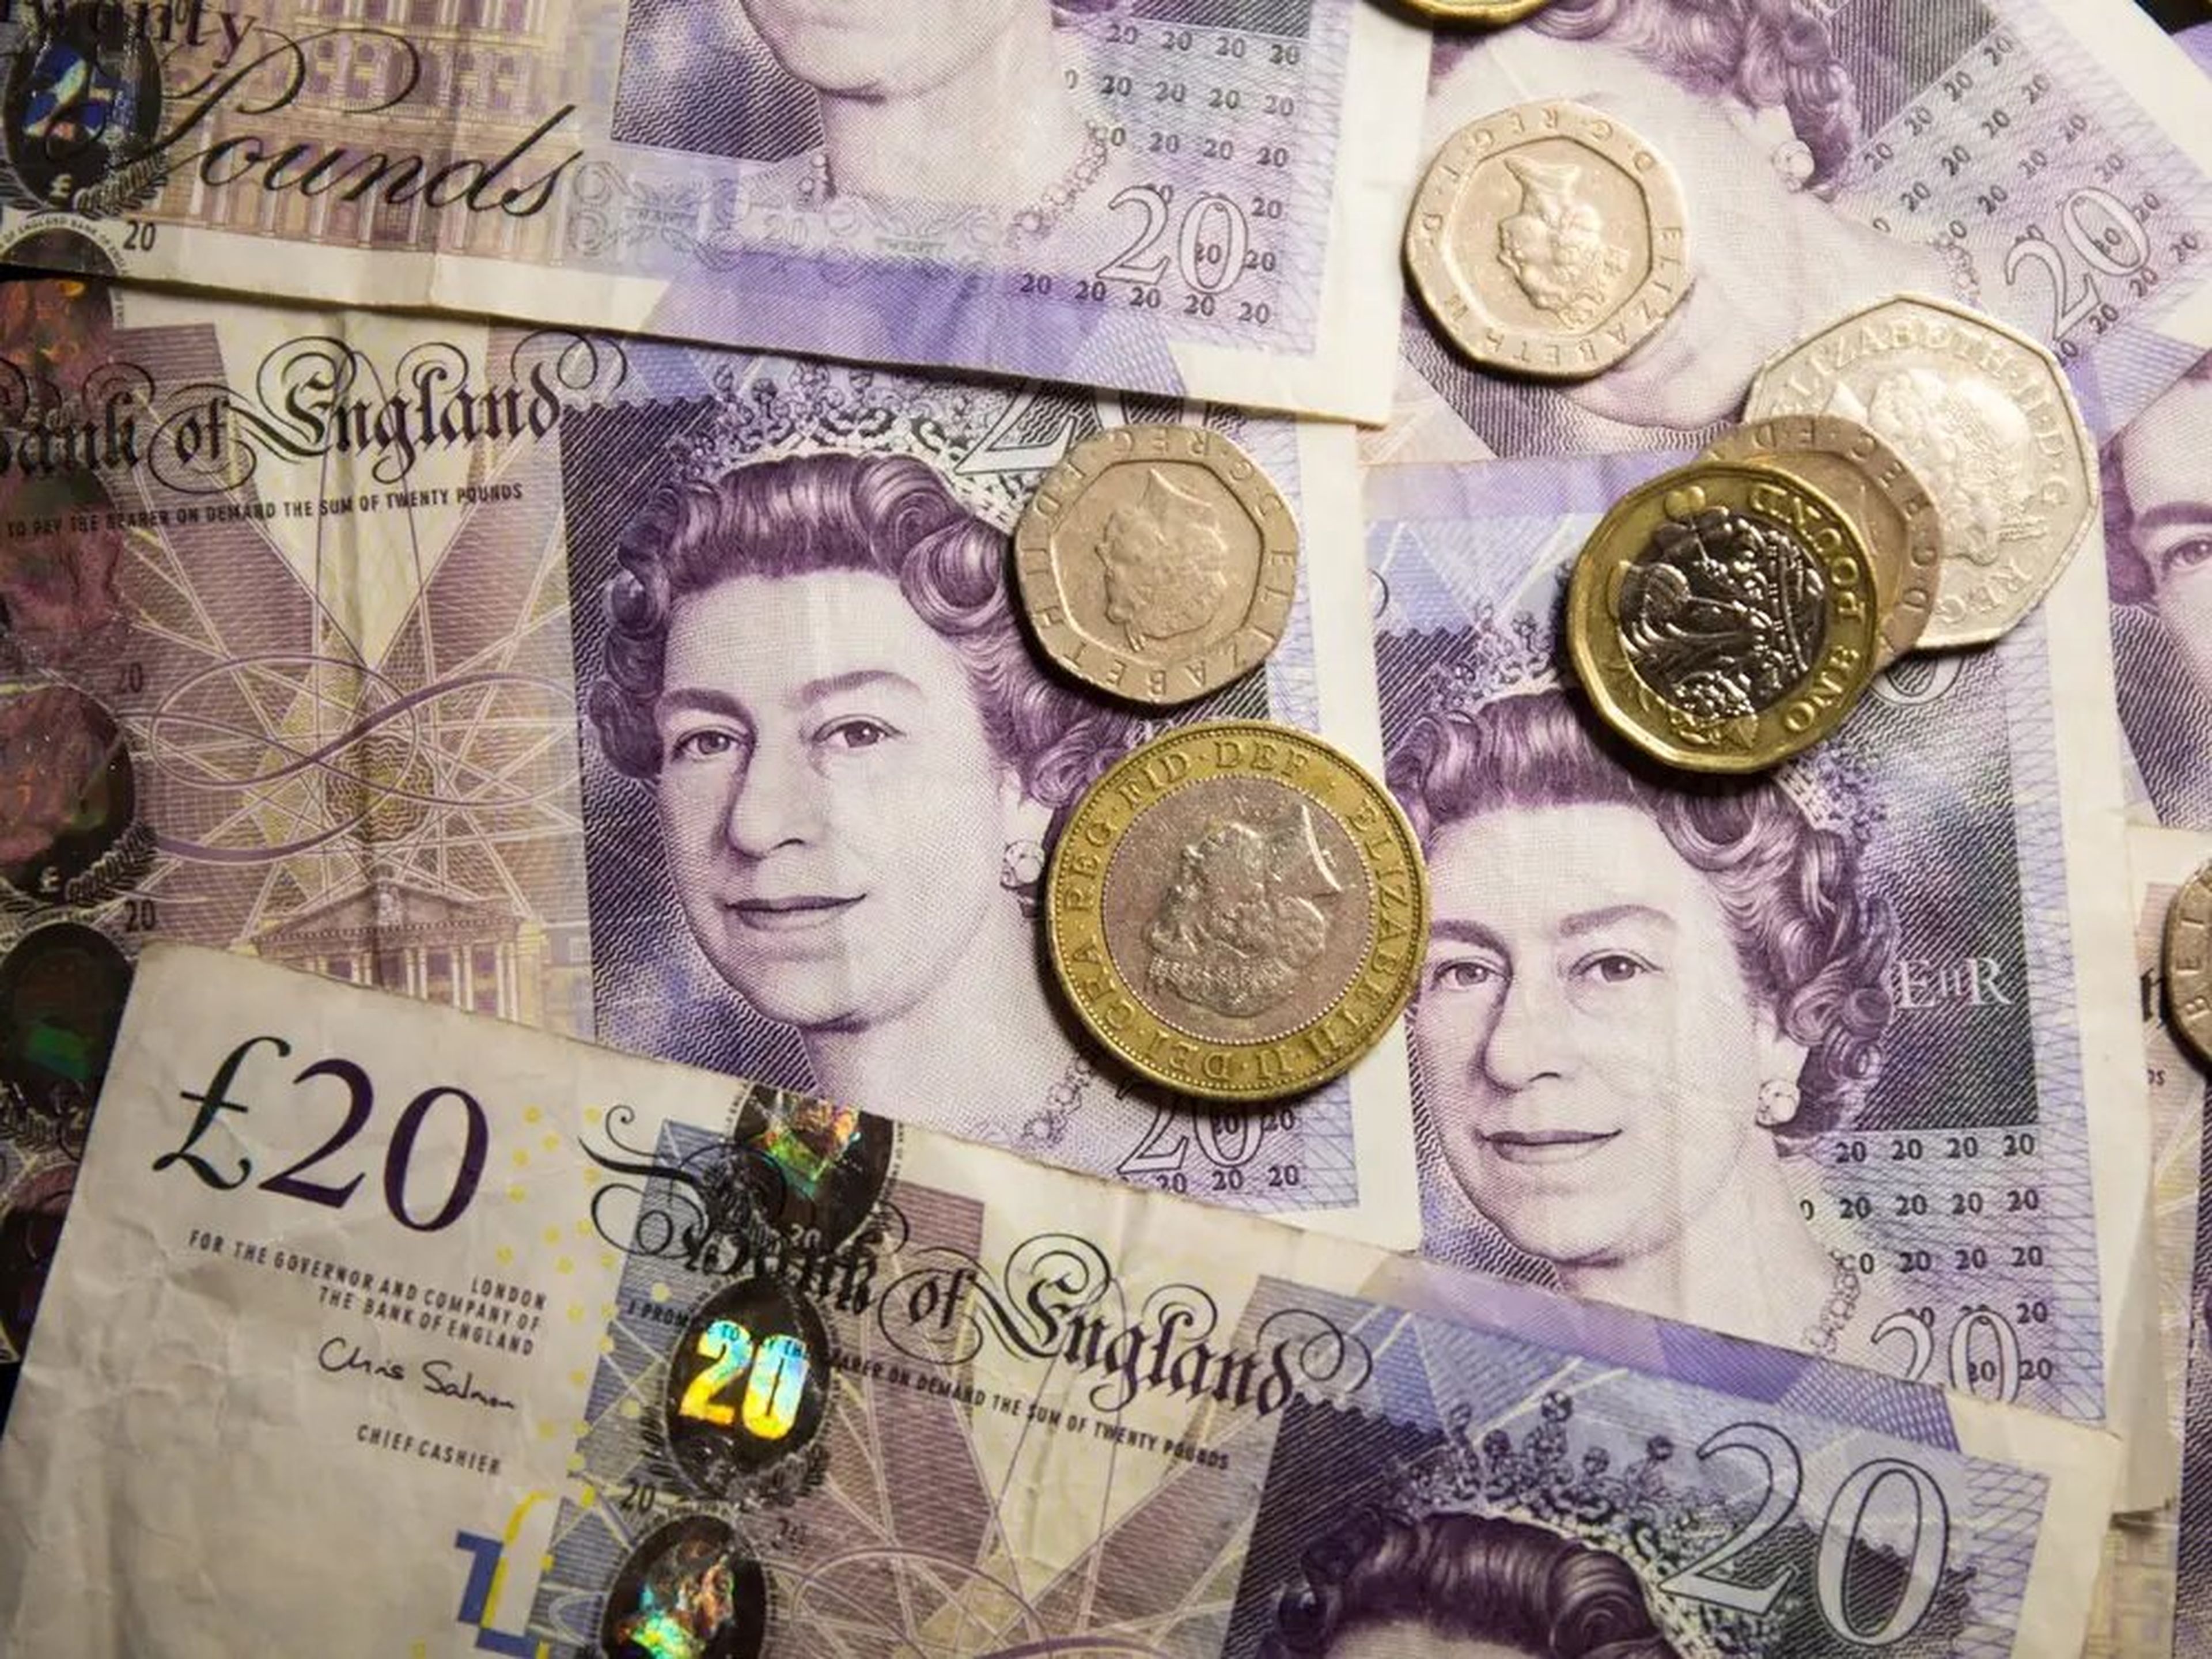 Billetes y monedas británicos con el retrato de la reina de Inglaterra.